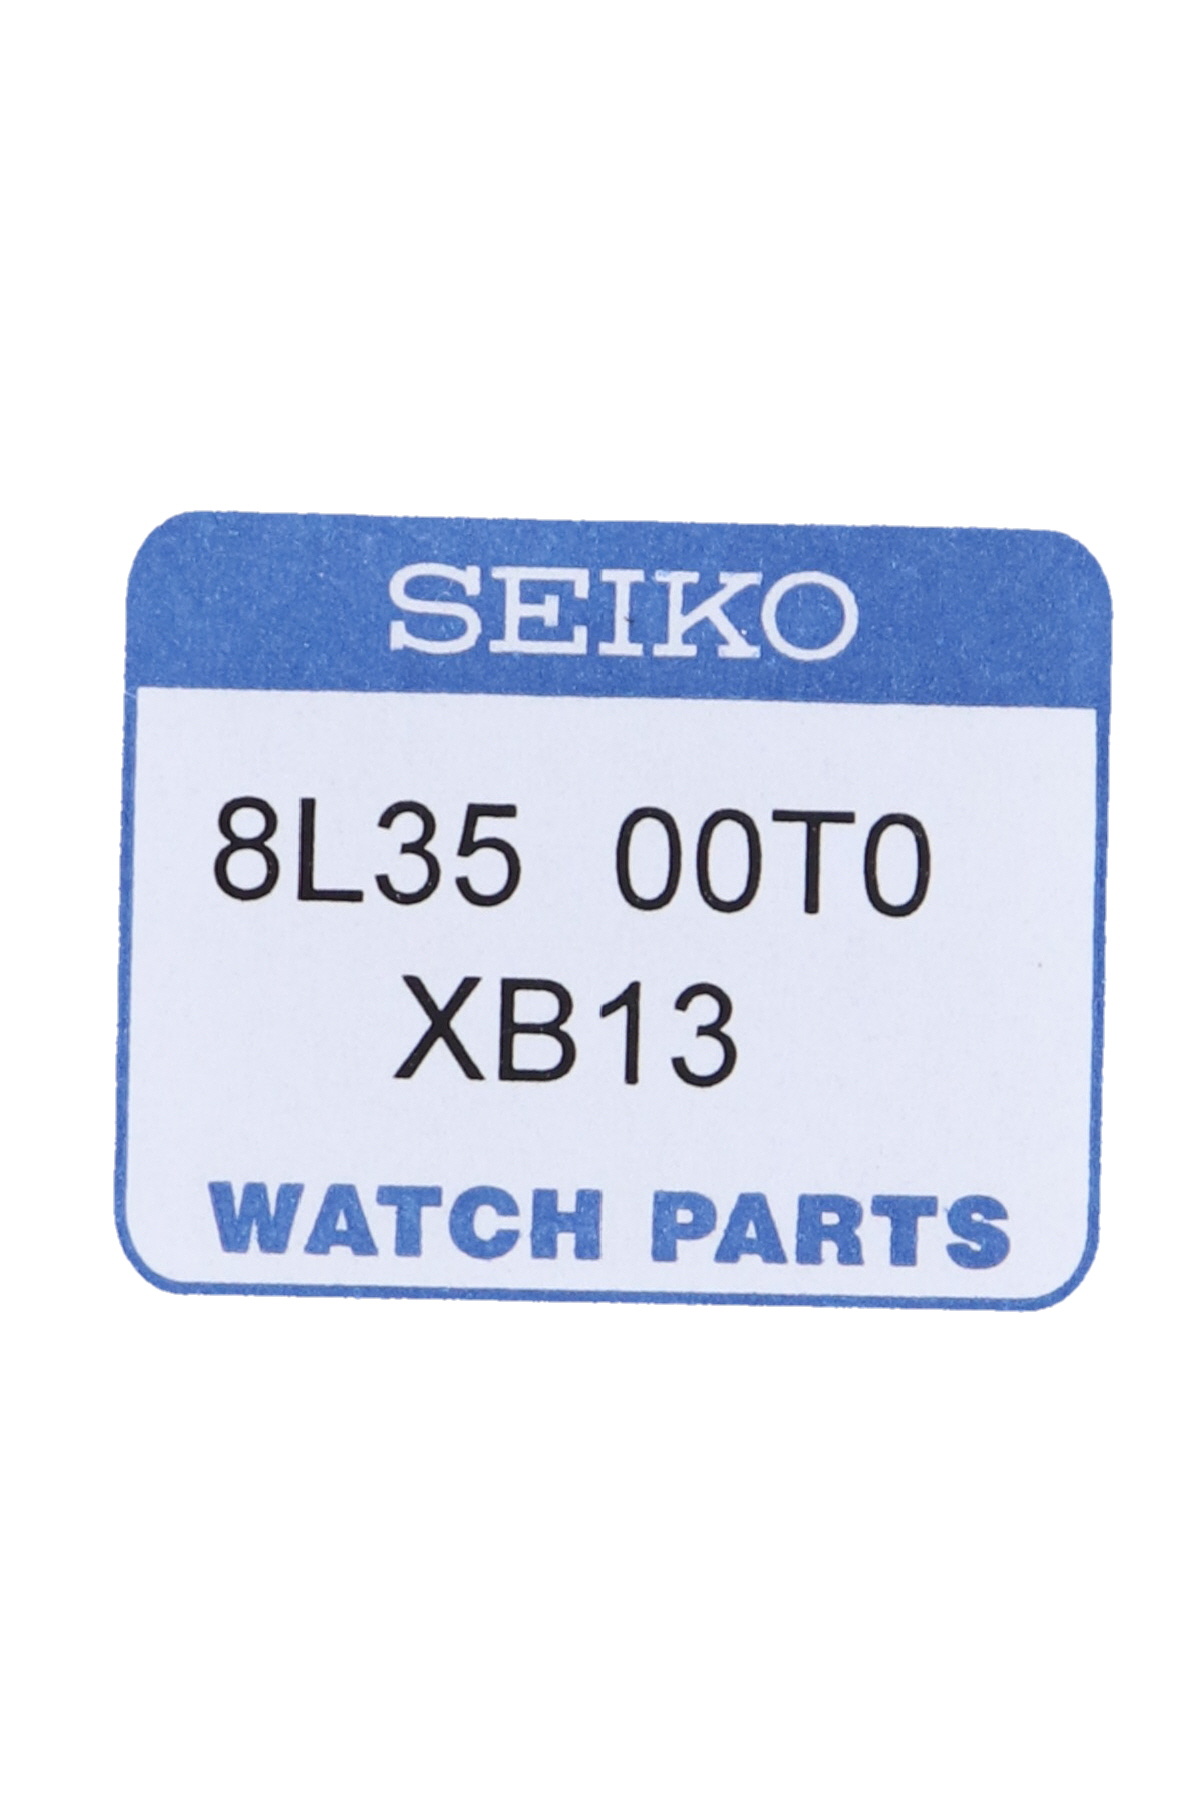 Seiko 8L3500T0XB13 Dial SBDX047 & SLA051J1 - WatchPlaza